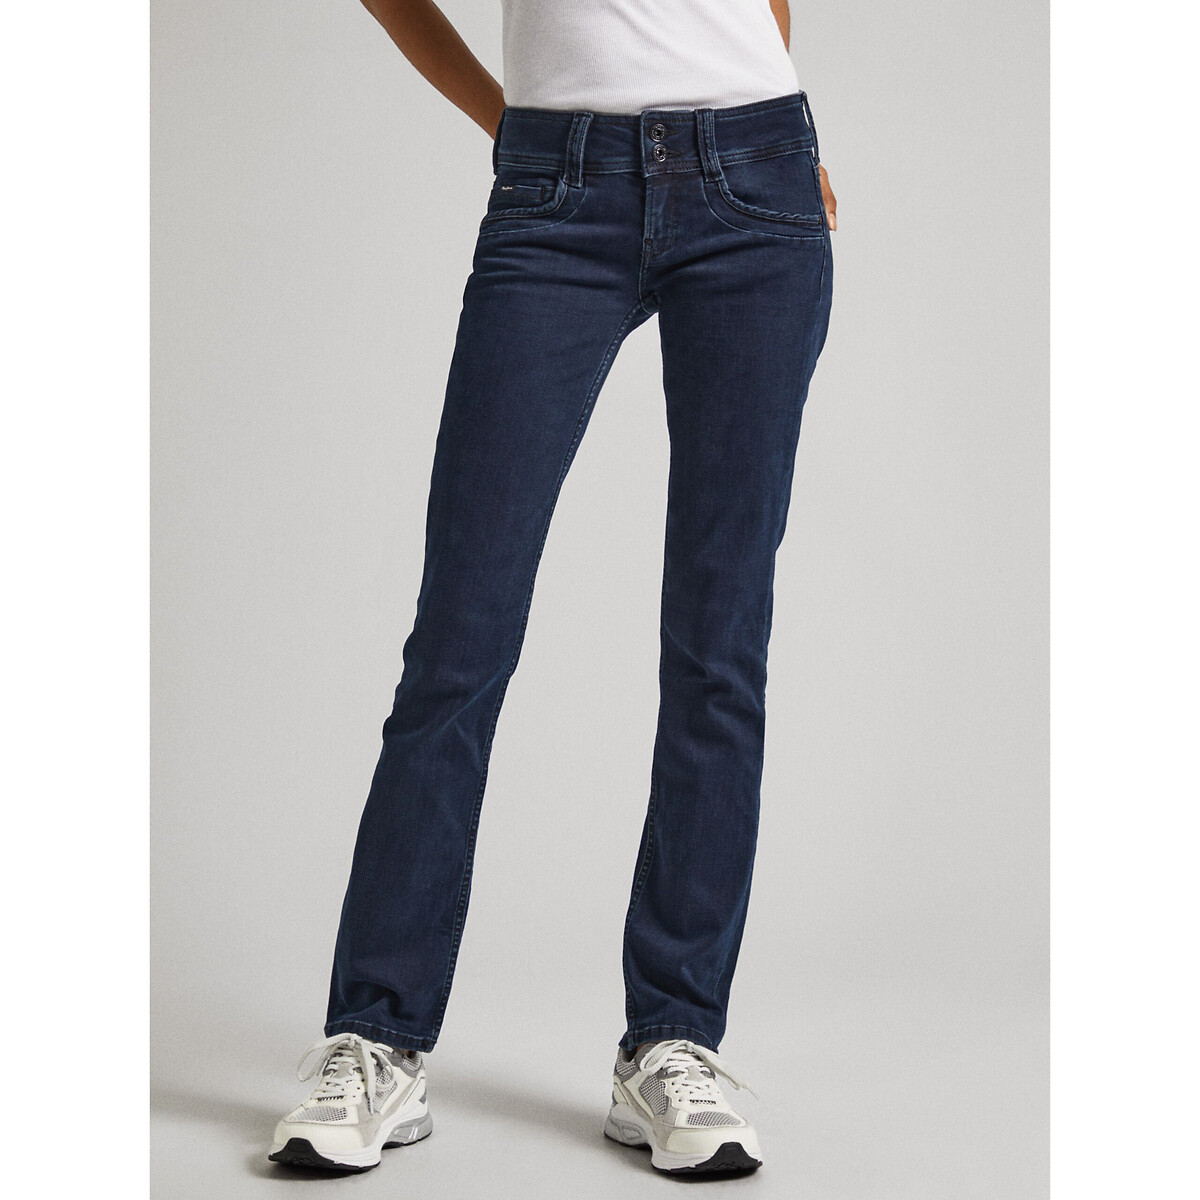 Джинсы узкие с низкой посадкой 28/30 синий узкие джинсы с низкой посадкой серый